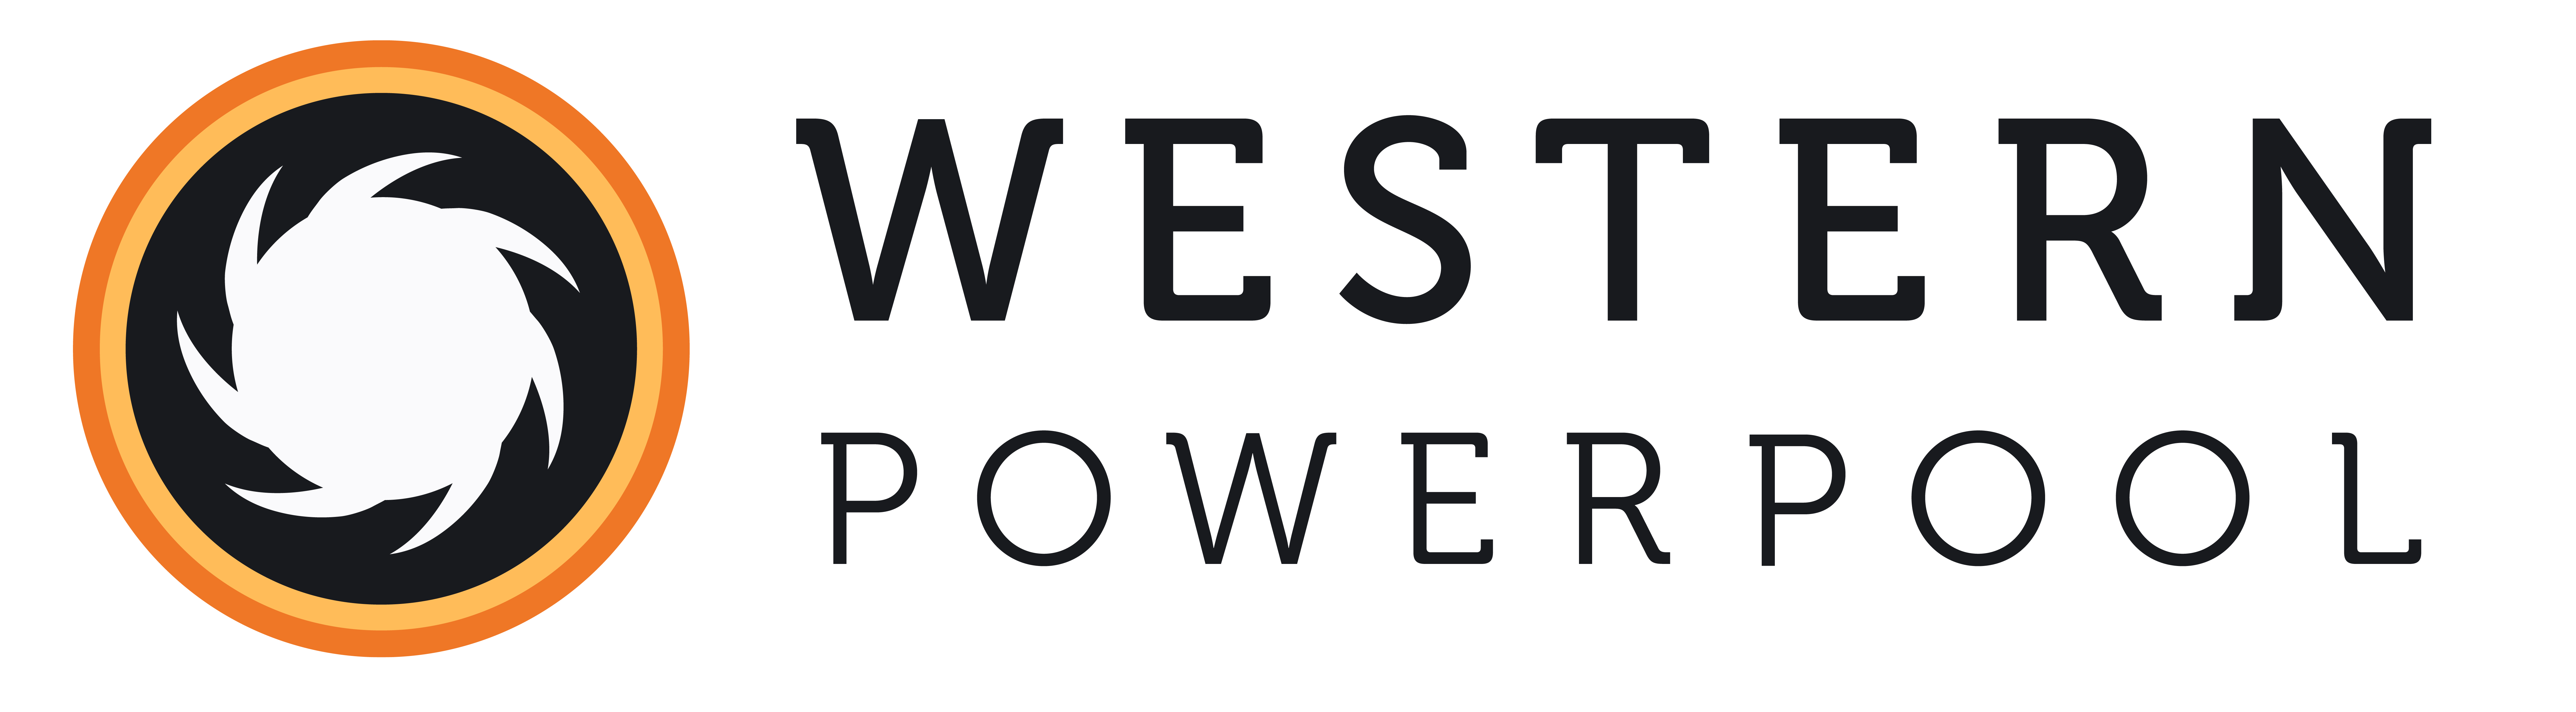 Western Power Pool